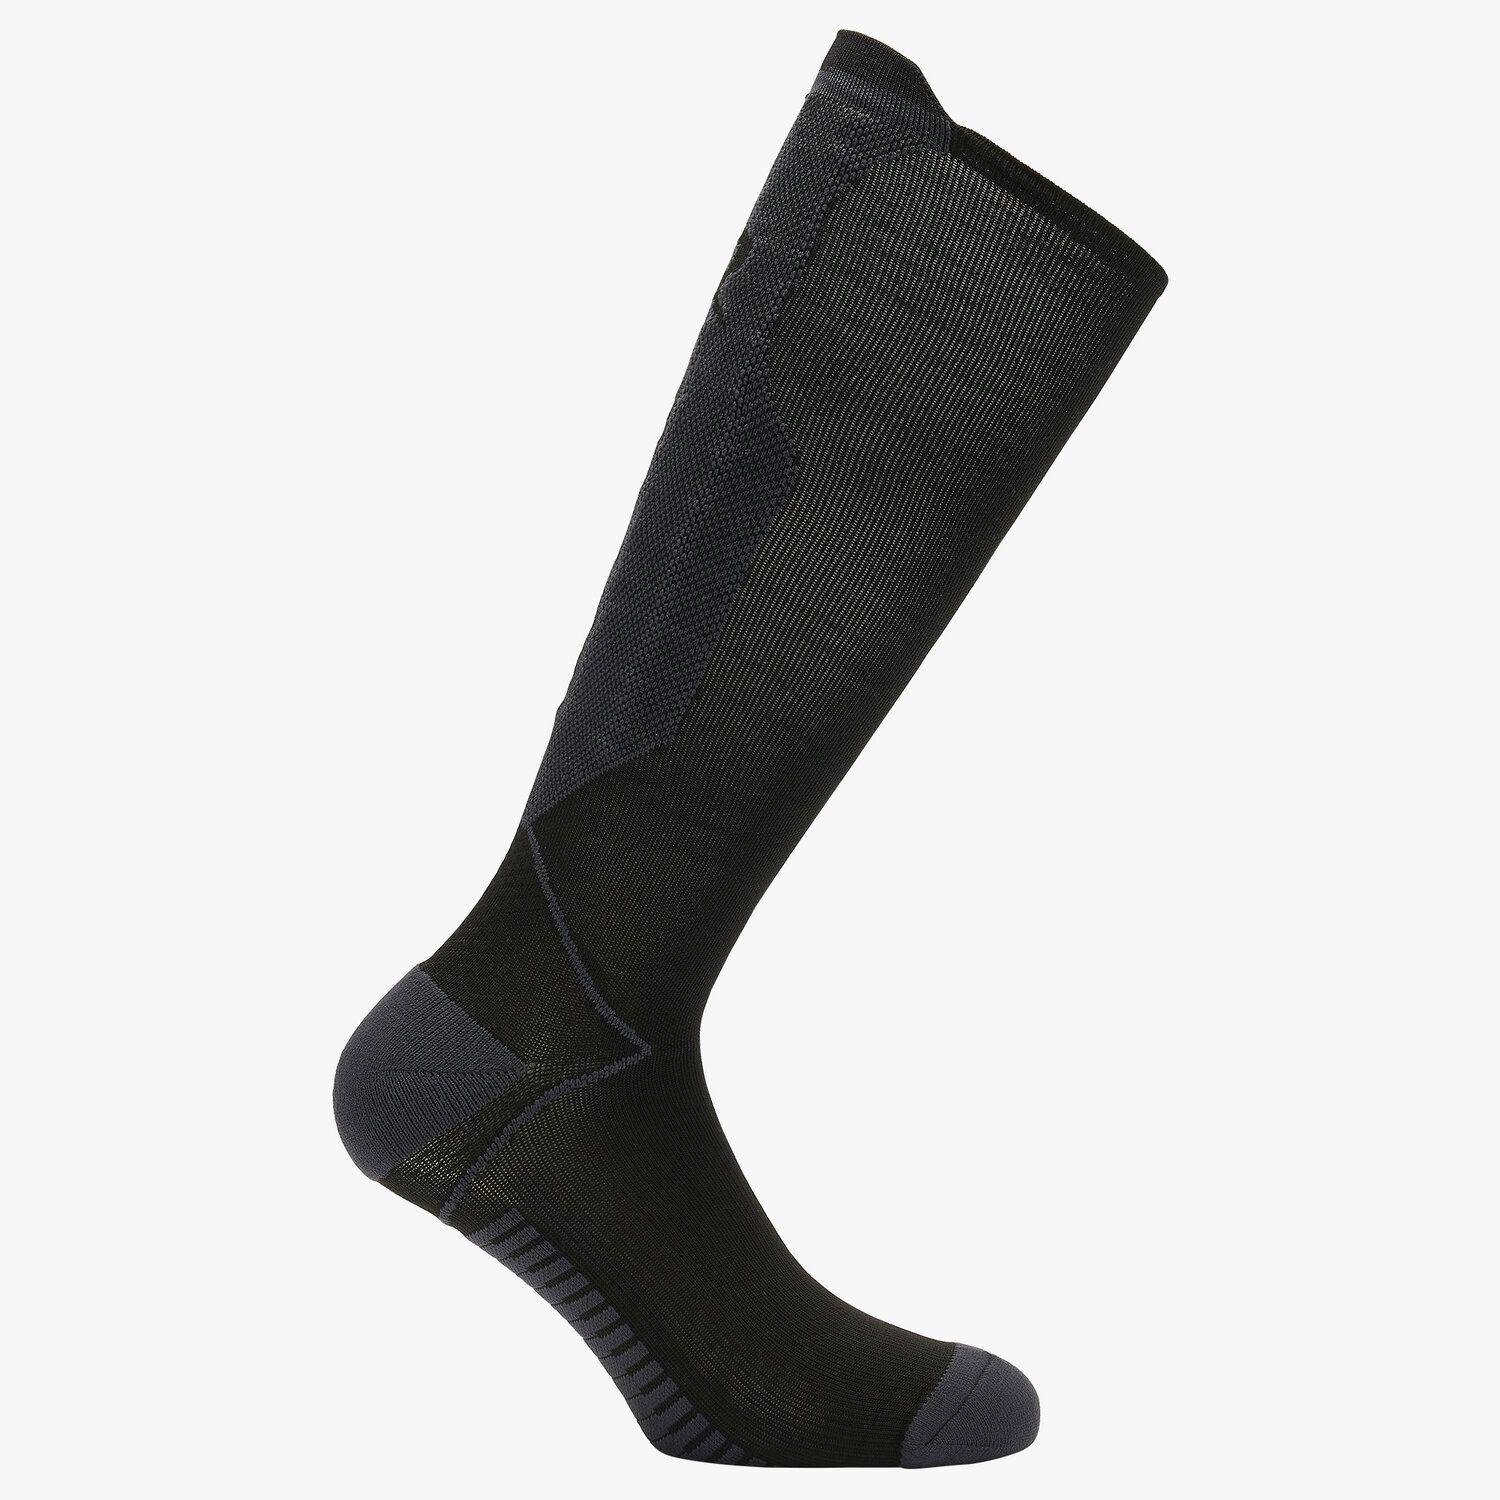 Cavalleria Toscana REVO Socks BLACK/DARK GREY-1